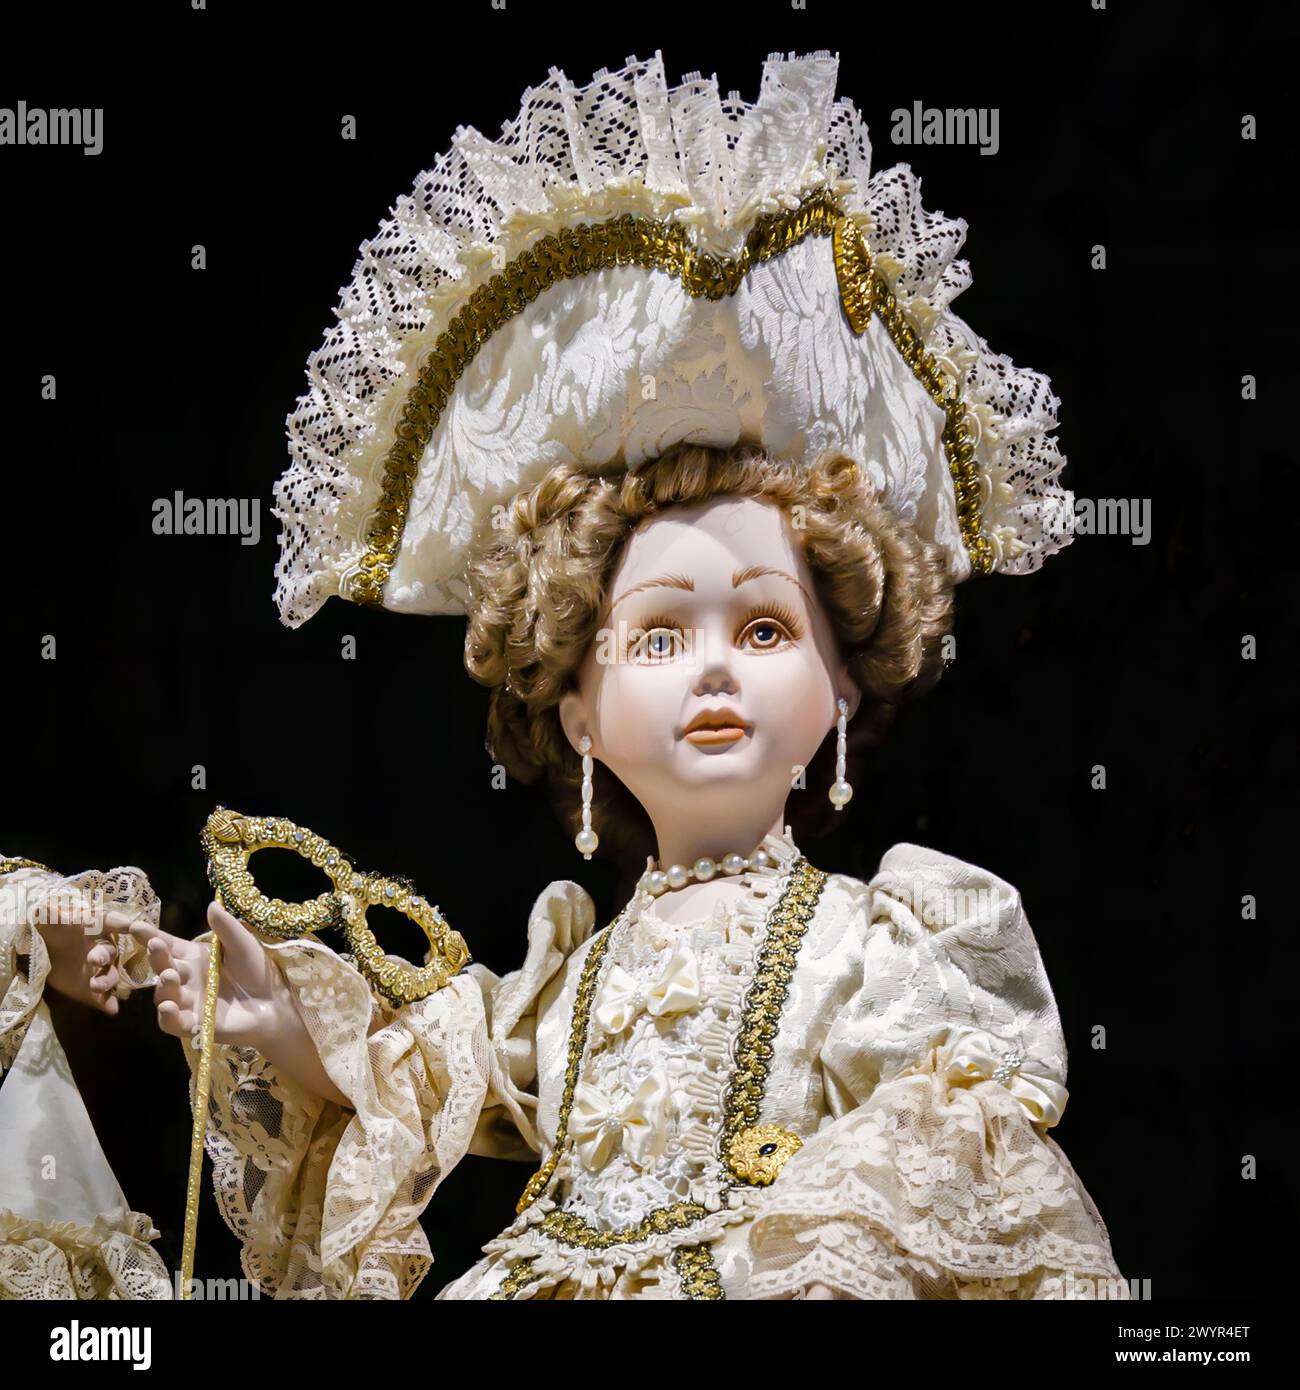 Kopf einer traditionell mit Spitze gekleideten Puppe, die in einem Geschäft als typische TouristenSouvenirs in einem Geschäft in der Gegend von Castello in Venedig, Italien, ausgestellt wird Stockfoto